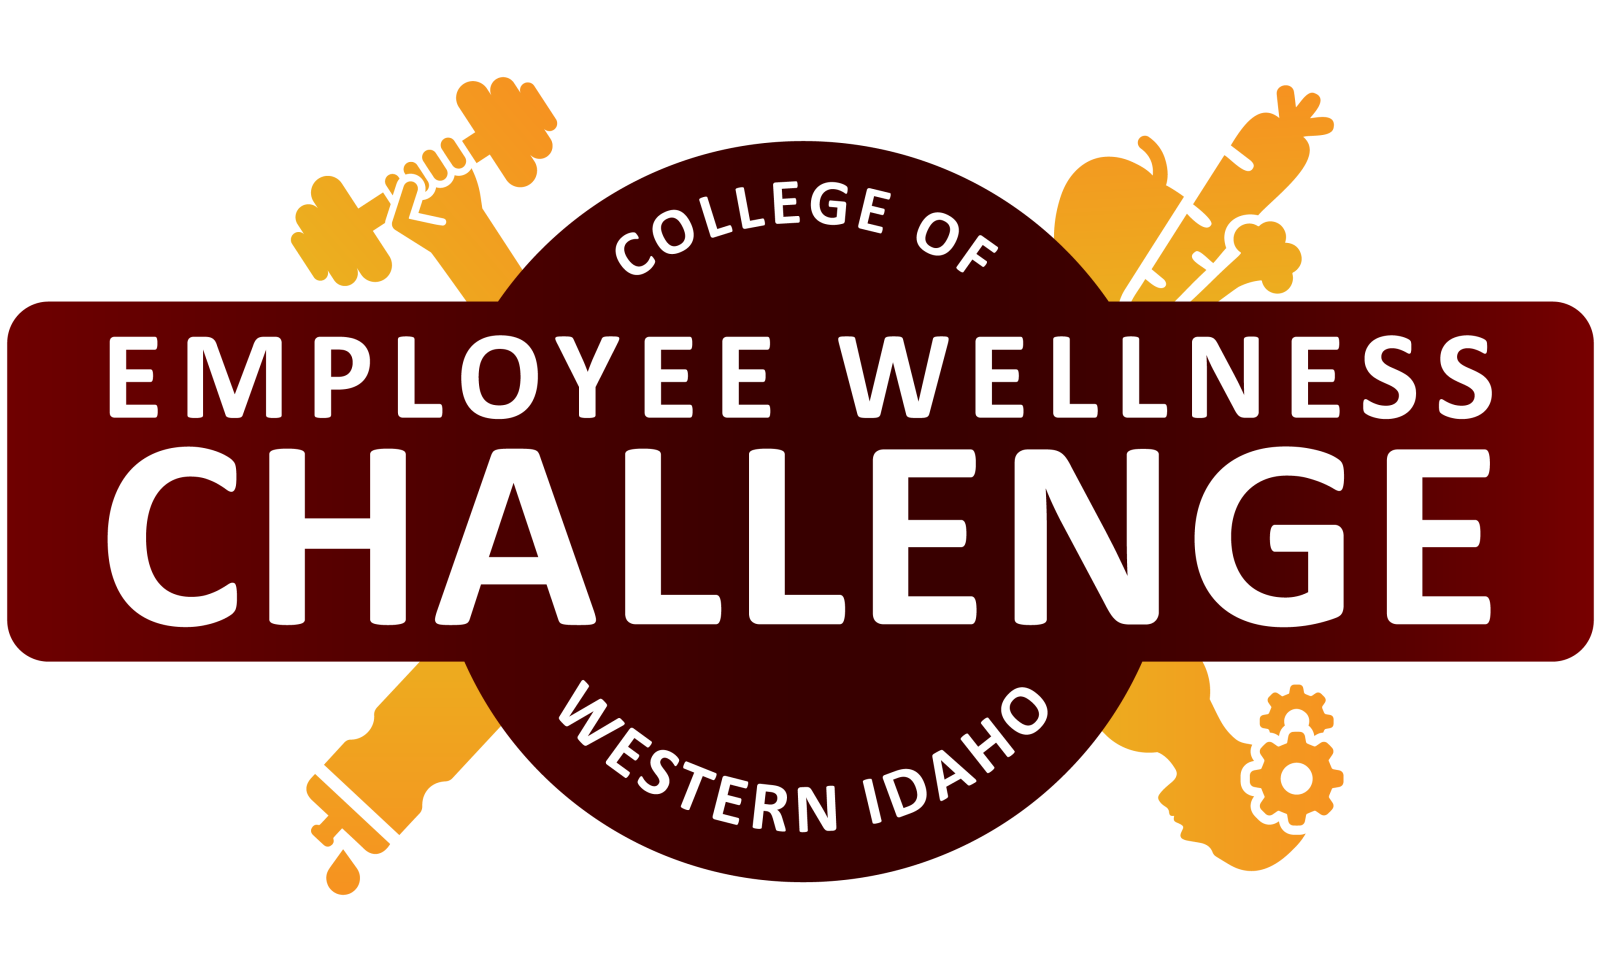 College of Western Idaho Employee Wellness Challenge